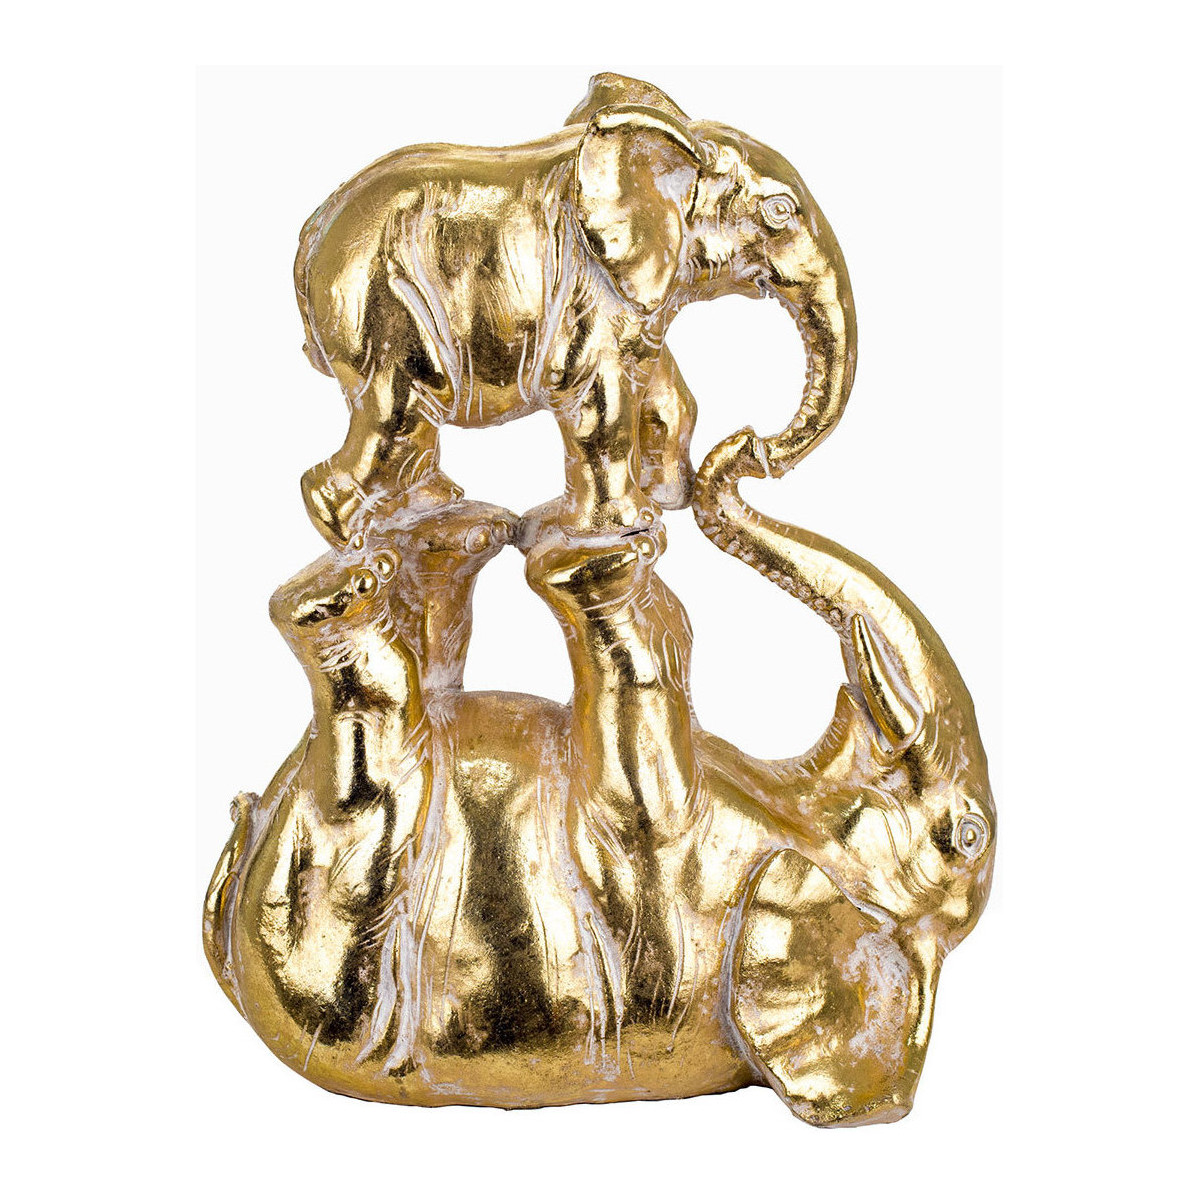 Casa Estatuetas Signes Grimalt Figura De Elefante Ouro